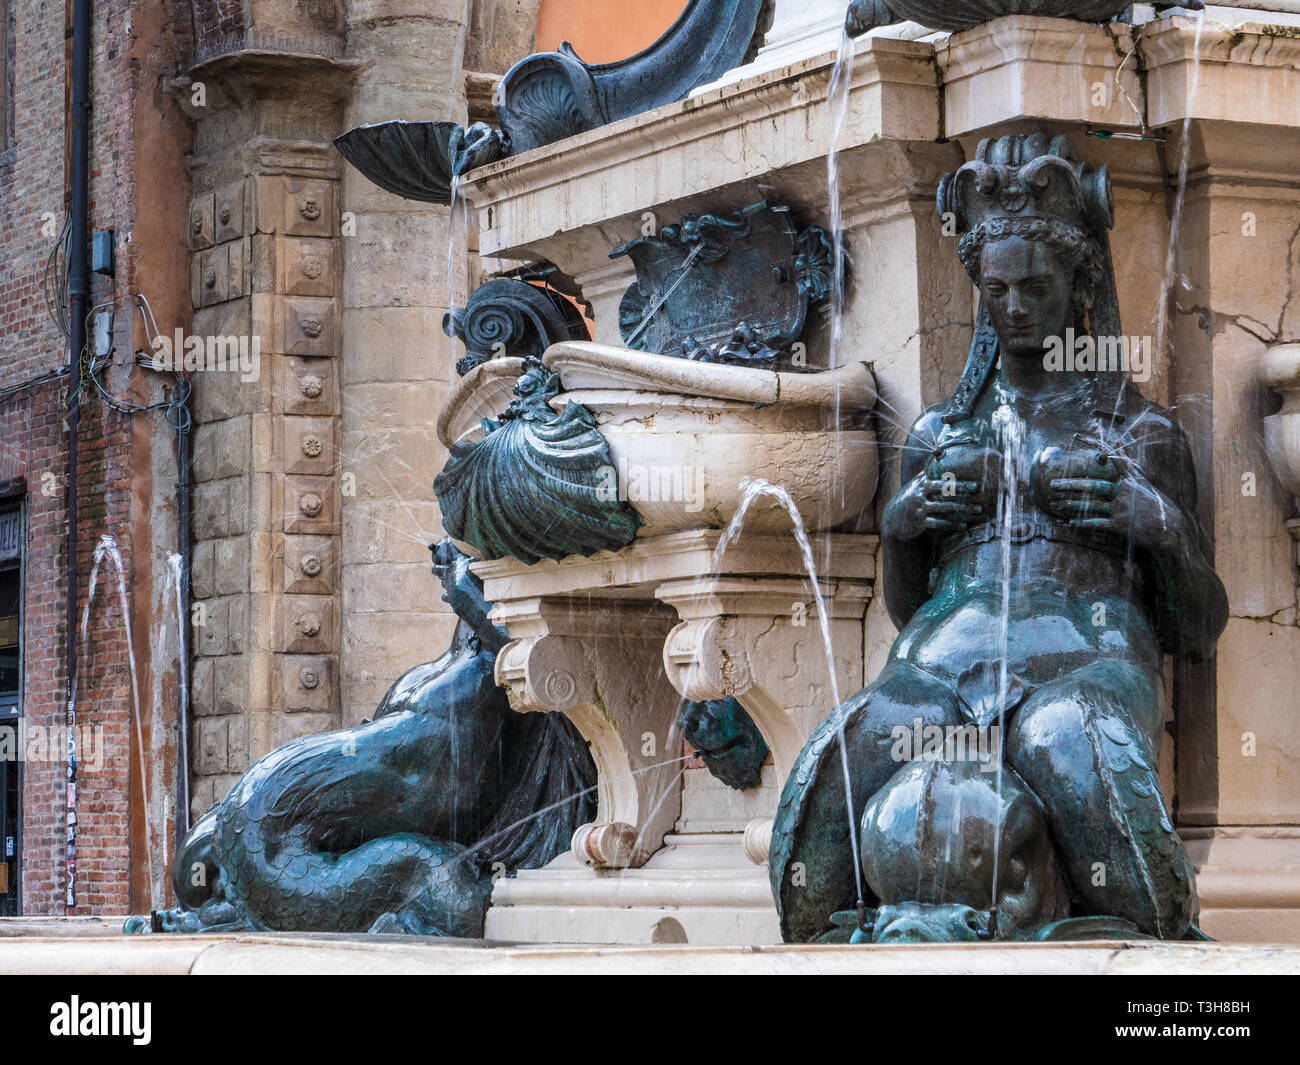 Fontana del Nettuno Fontana di Nettuno, una monumentale fontana civica situata sulla Piazza del Nettuno accanto a Piazza Maggiore. Creato 1565 dal Giambologna Foto Stock